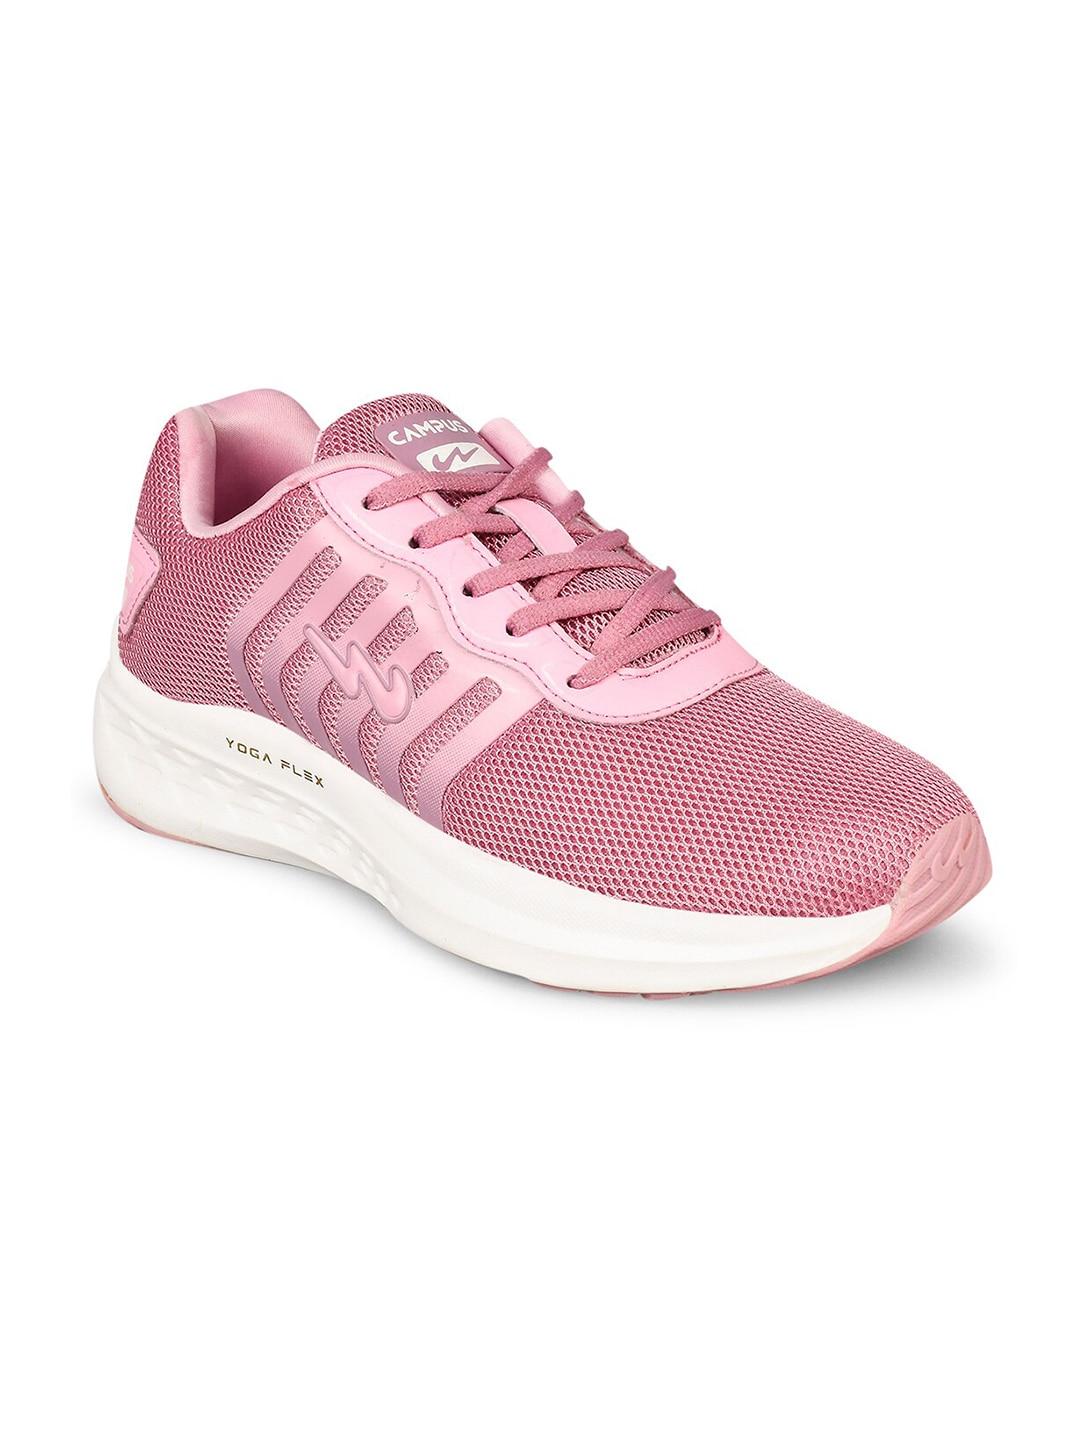 campus-women-pink-mesh-running-shoes